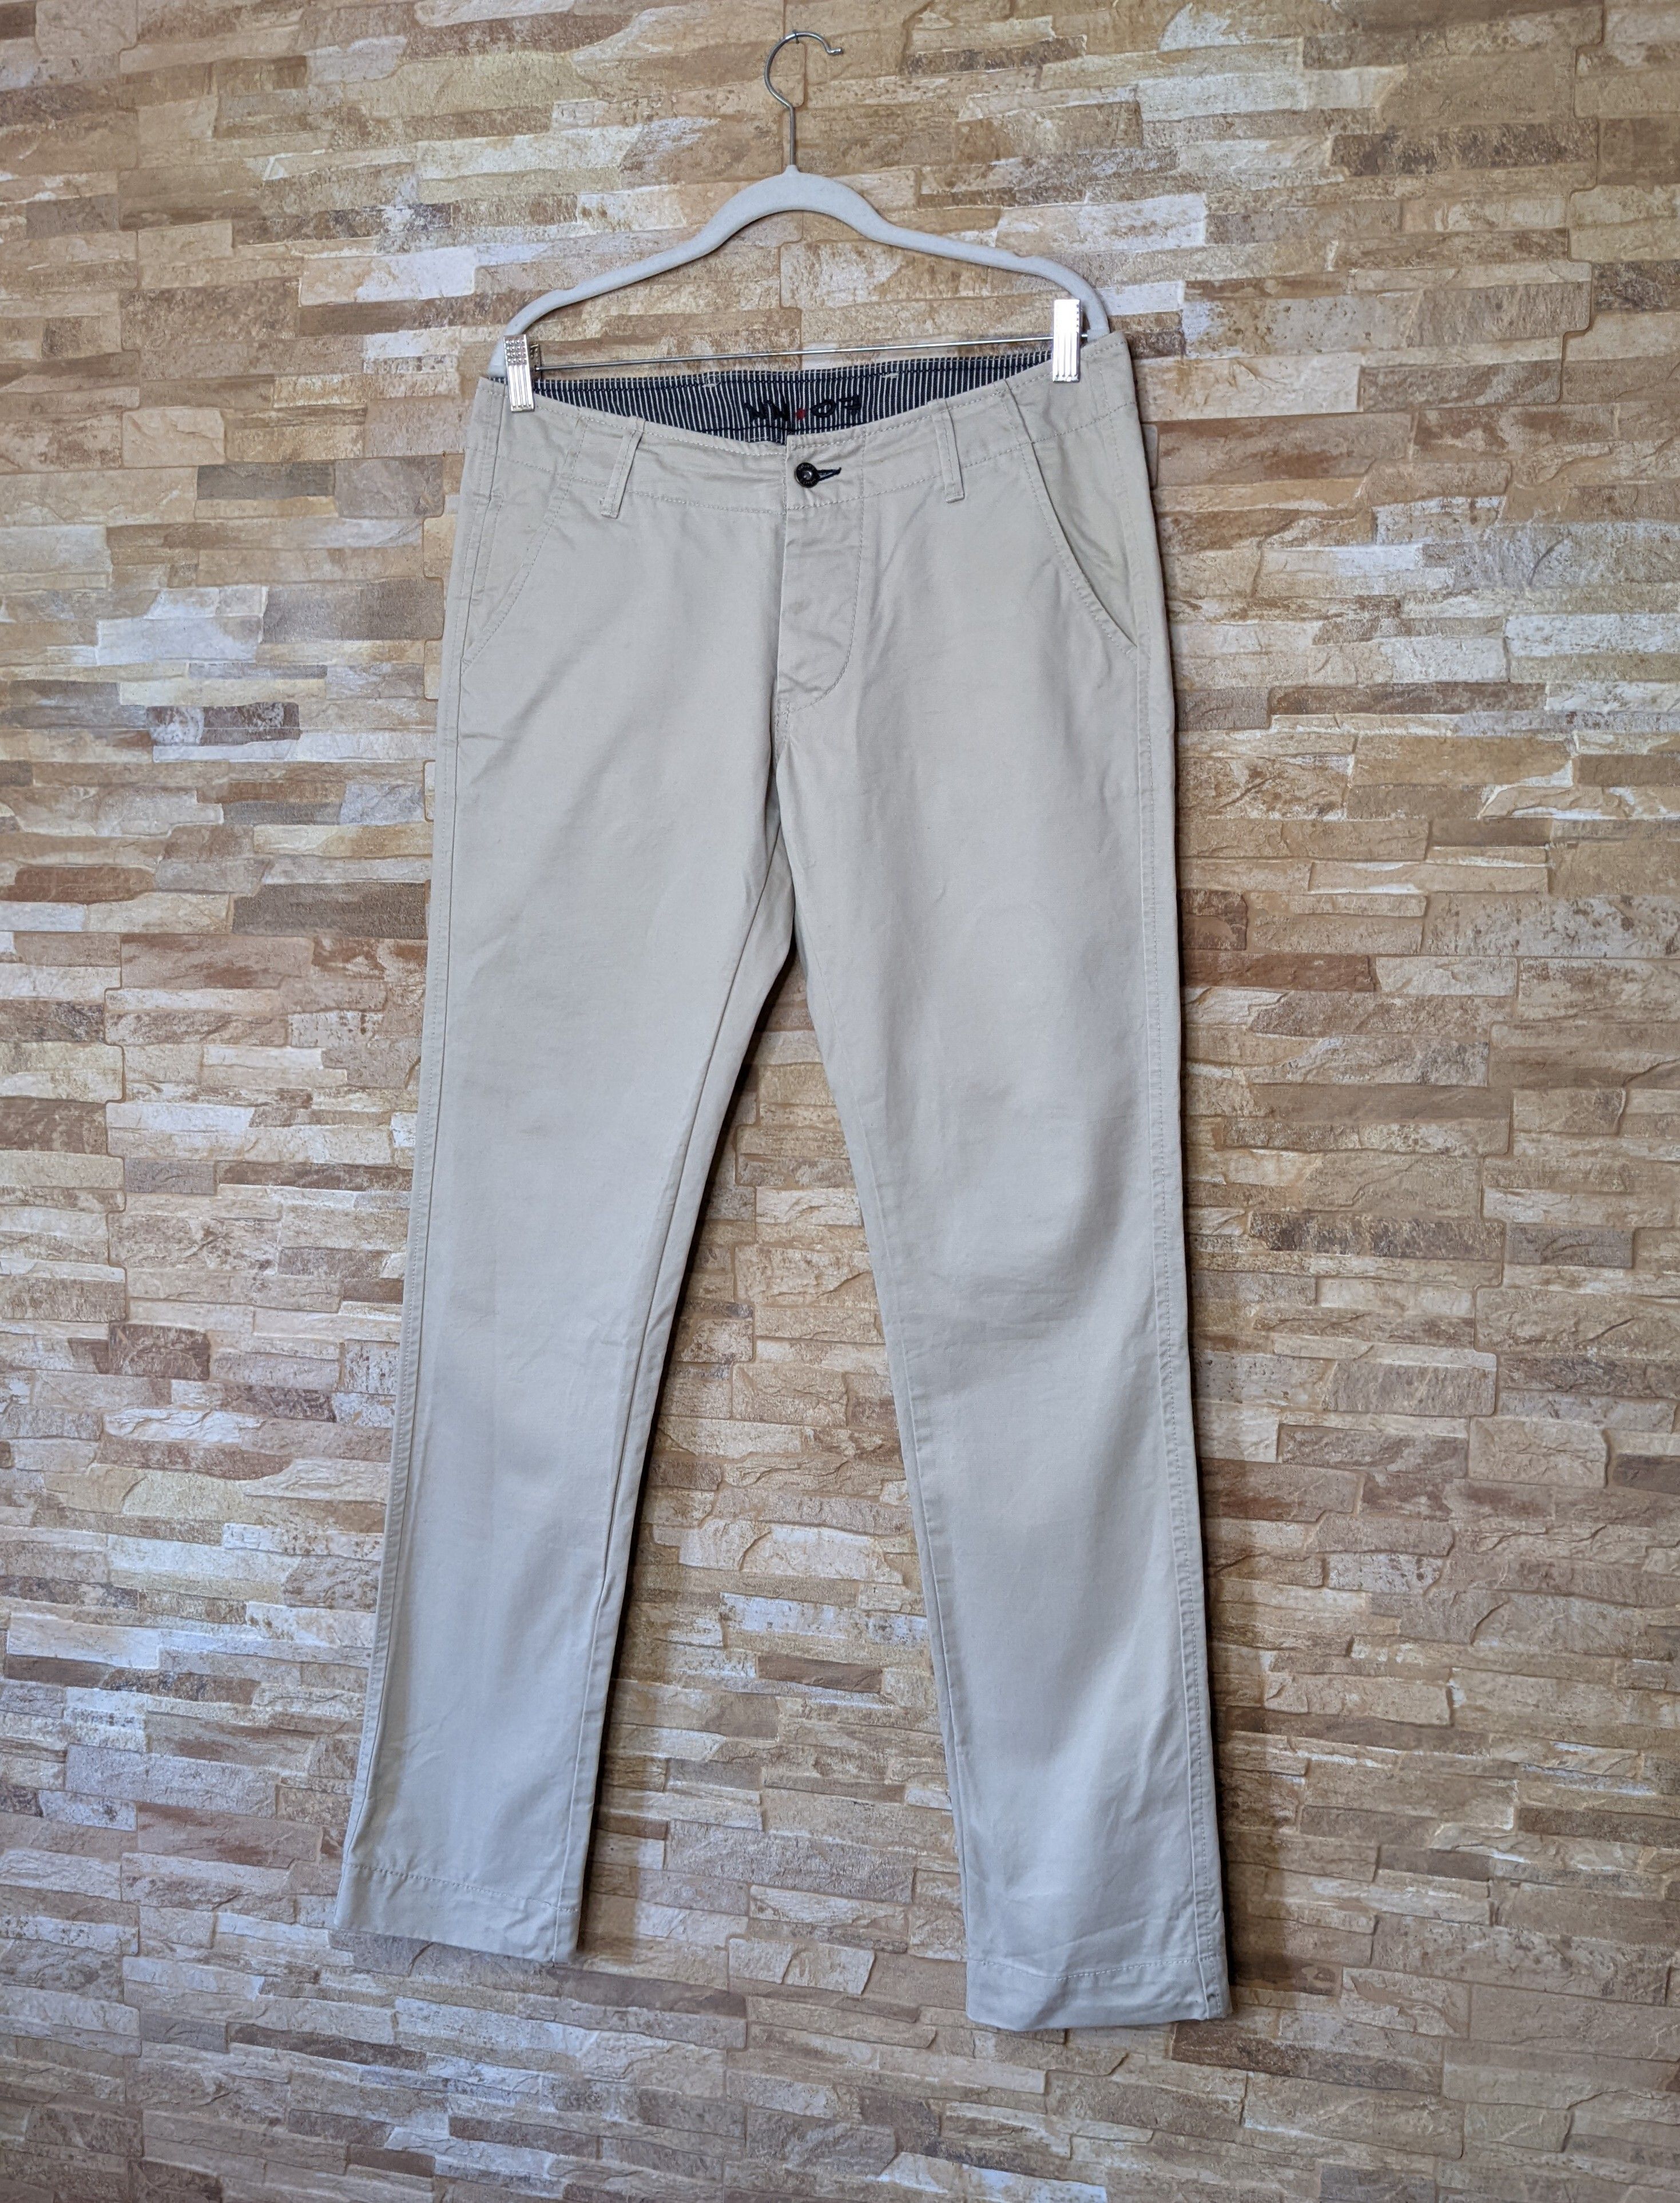 Nn07 Nn07 Simon cotton chinos pants 32x34 Size US 32 / EU 48 - 1 Preview